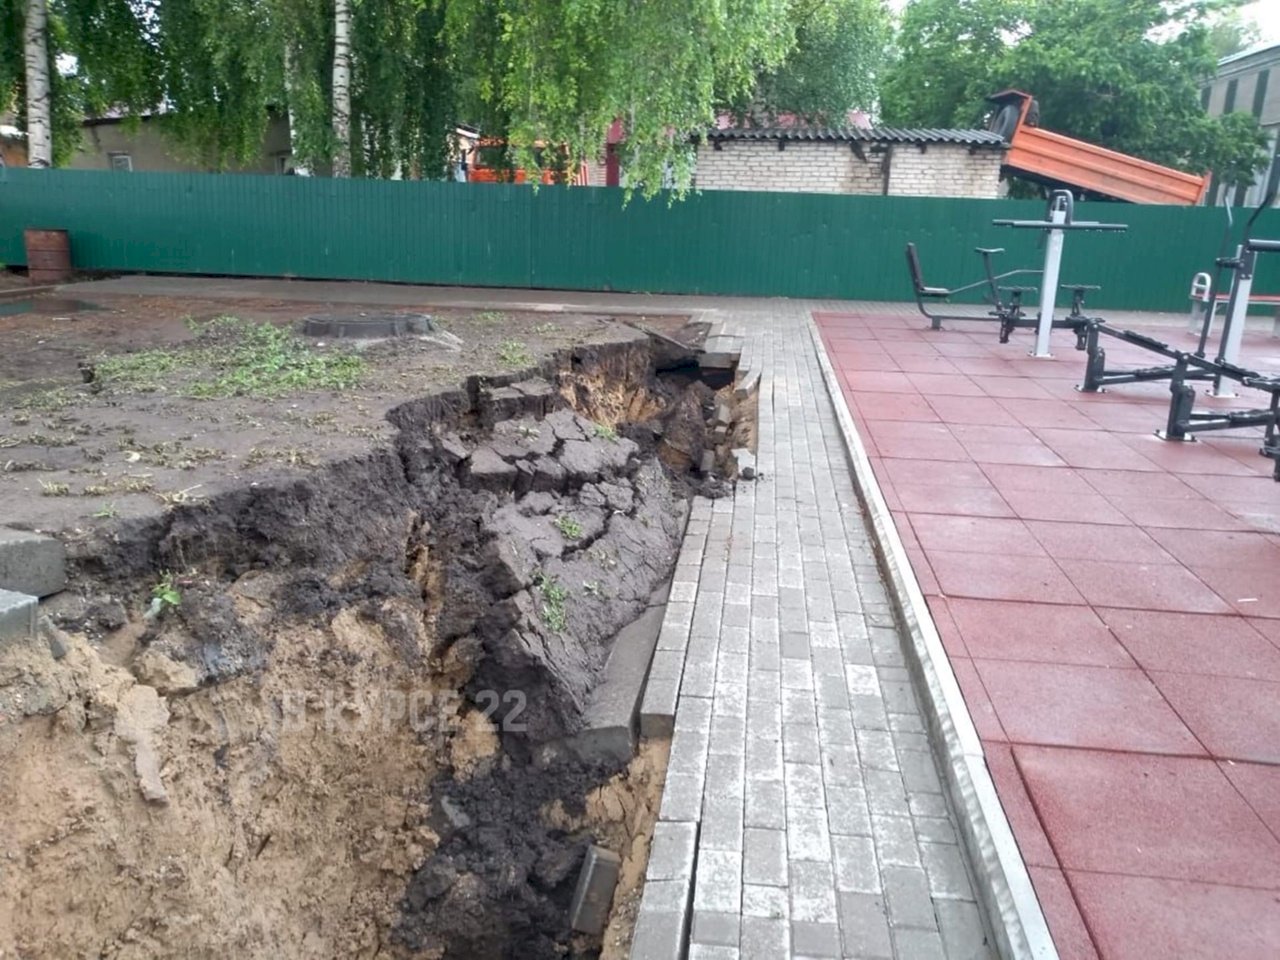 Последствия дождя в Романово. Фото: vk.com/vkurse22barnaul